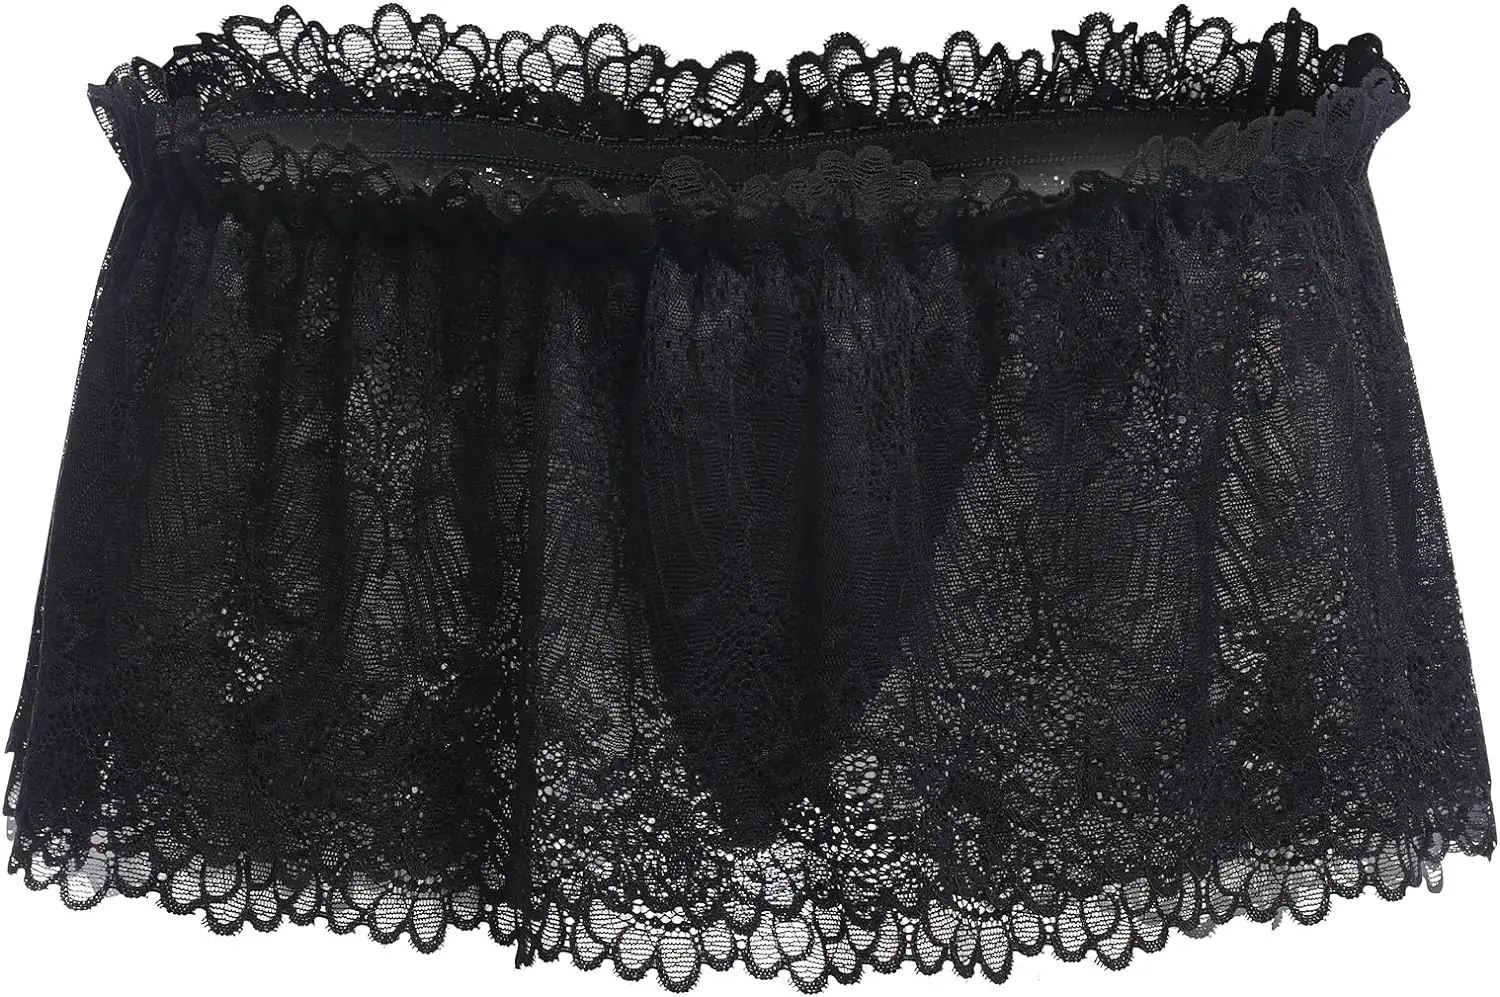 abafip men crossdressing sissy lace lingerie review